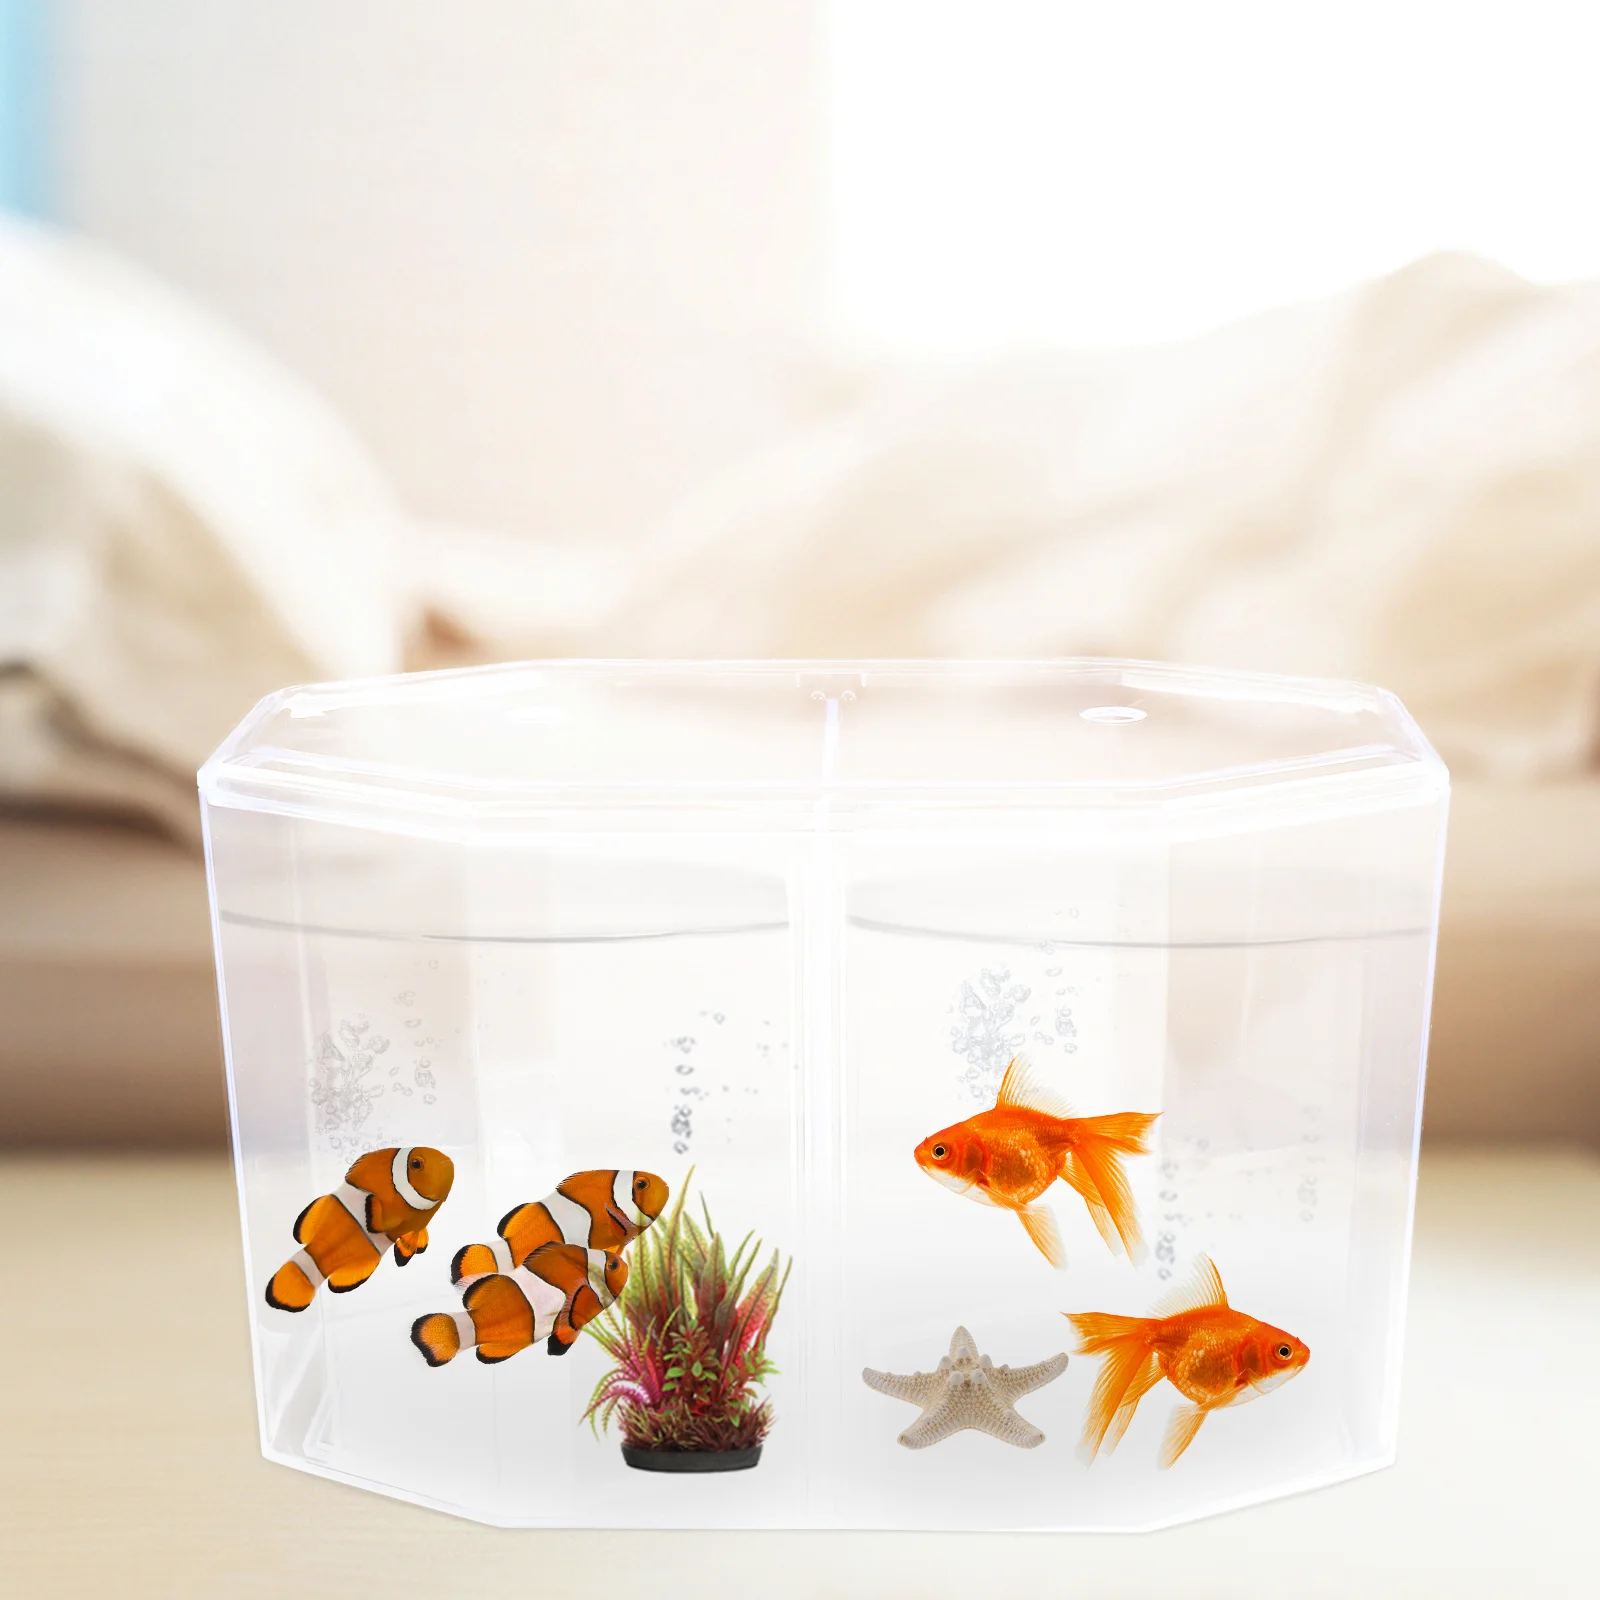 Восьмиугольный контейнер для разведения креветок Бетта, аквариум с золотыми рыбками, акриловая перегородка, прозрачный аксессуар Изображение 3